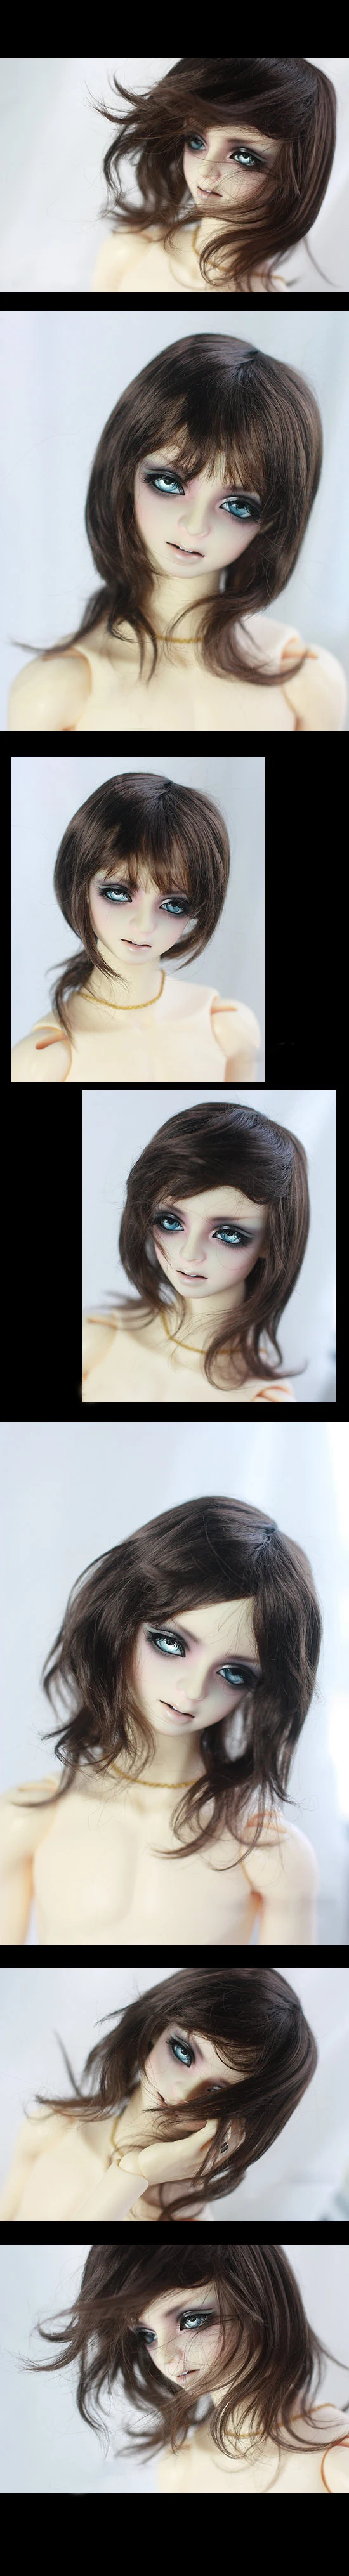 BJD кукольные парики для волос коричневый черный имитация мохера парики средней длины для 1/3 1/4 BJD DD MSD кукла супер мягкие волосы куклы аксессуары